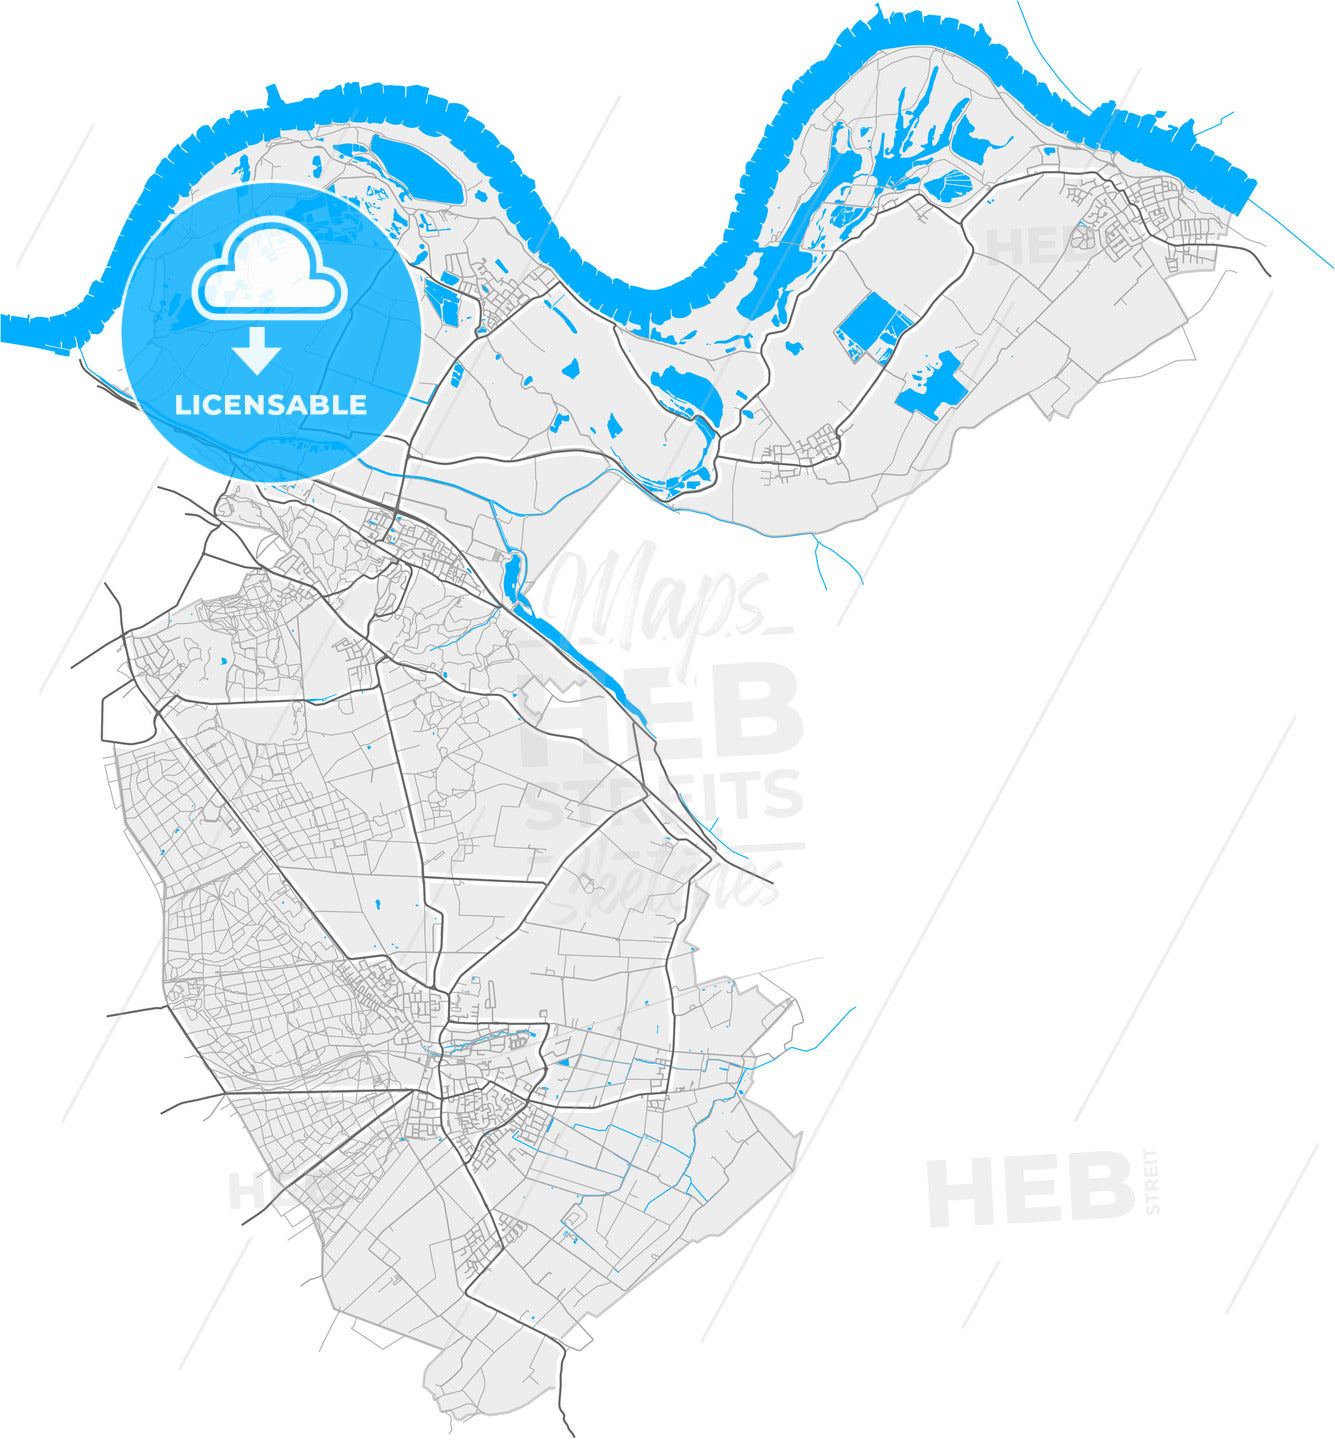 Berg en Dal, Gelderland, Netherlands, high quality vector map